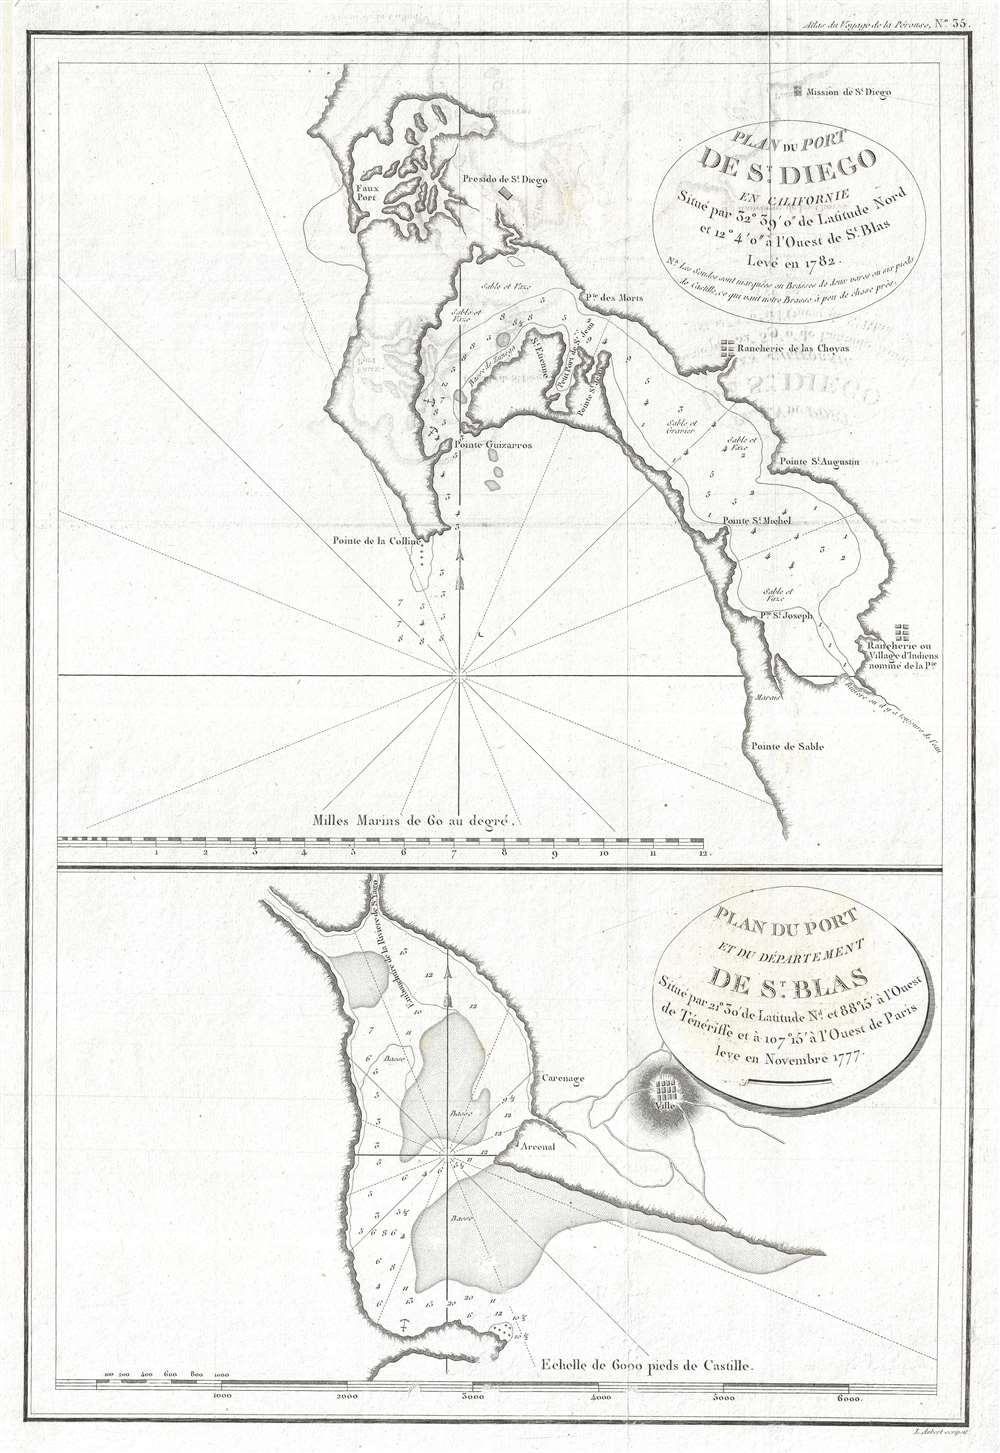 Plan du Port de St. Diego en Californie situe par 32°39'0 de latitude nord et 12°4'0 a l'ouest de St. Blas. Leve en 1782. / Plan du Port de du Departement de St. Blas situe par 21°30' de latitude nd. et 88°15' a l'ouest de Teneriffe et a 107°15' a l'ouest de Paris. - Main View